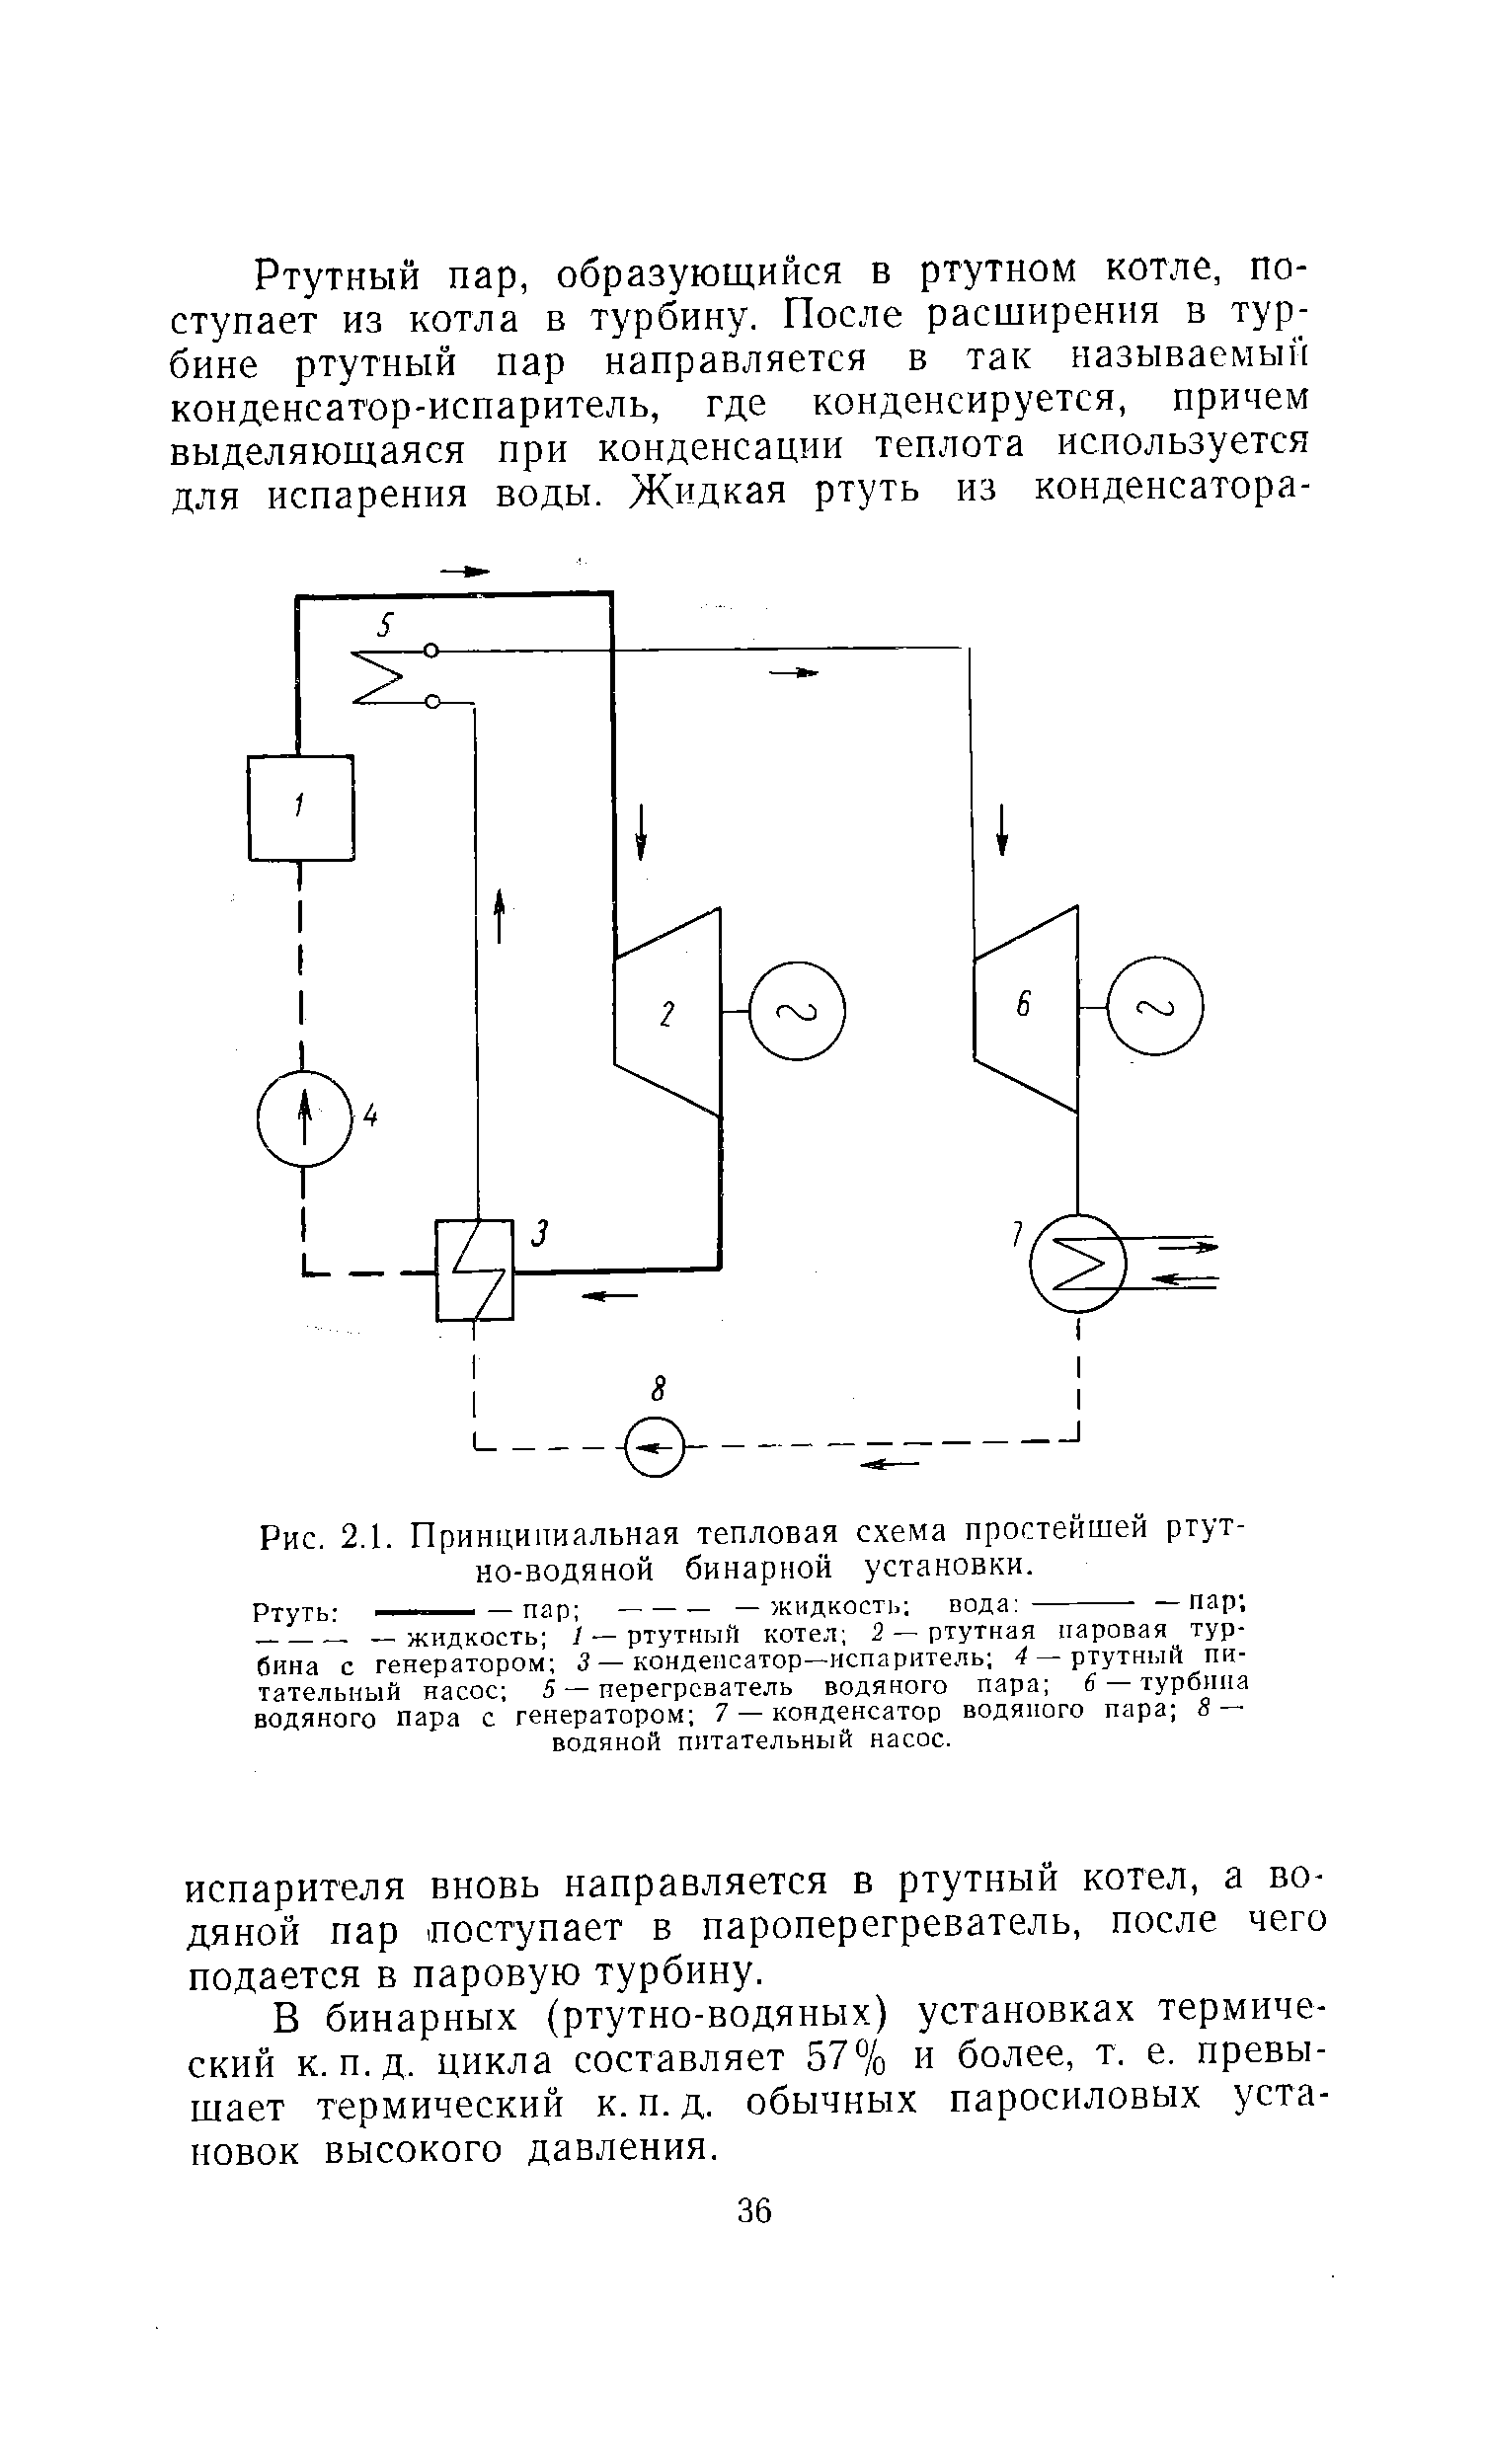 Рис. 2.1. Принципиальная тепловая схема простейшей ртутно-водяной бинарной установки.
